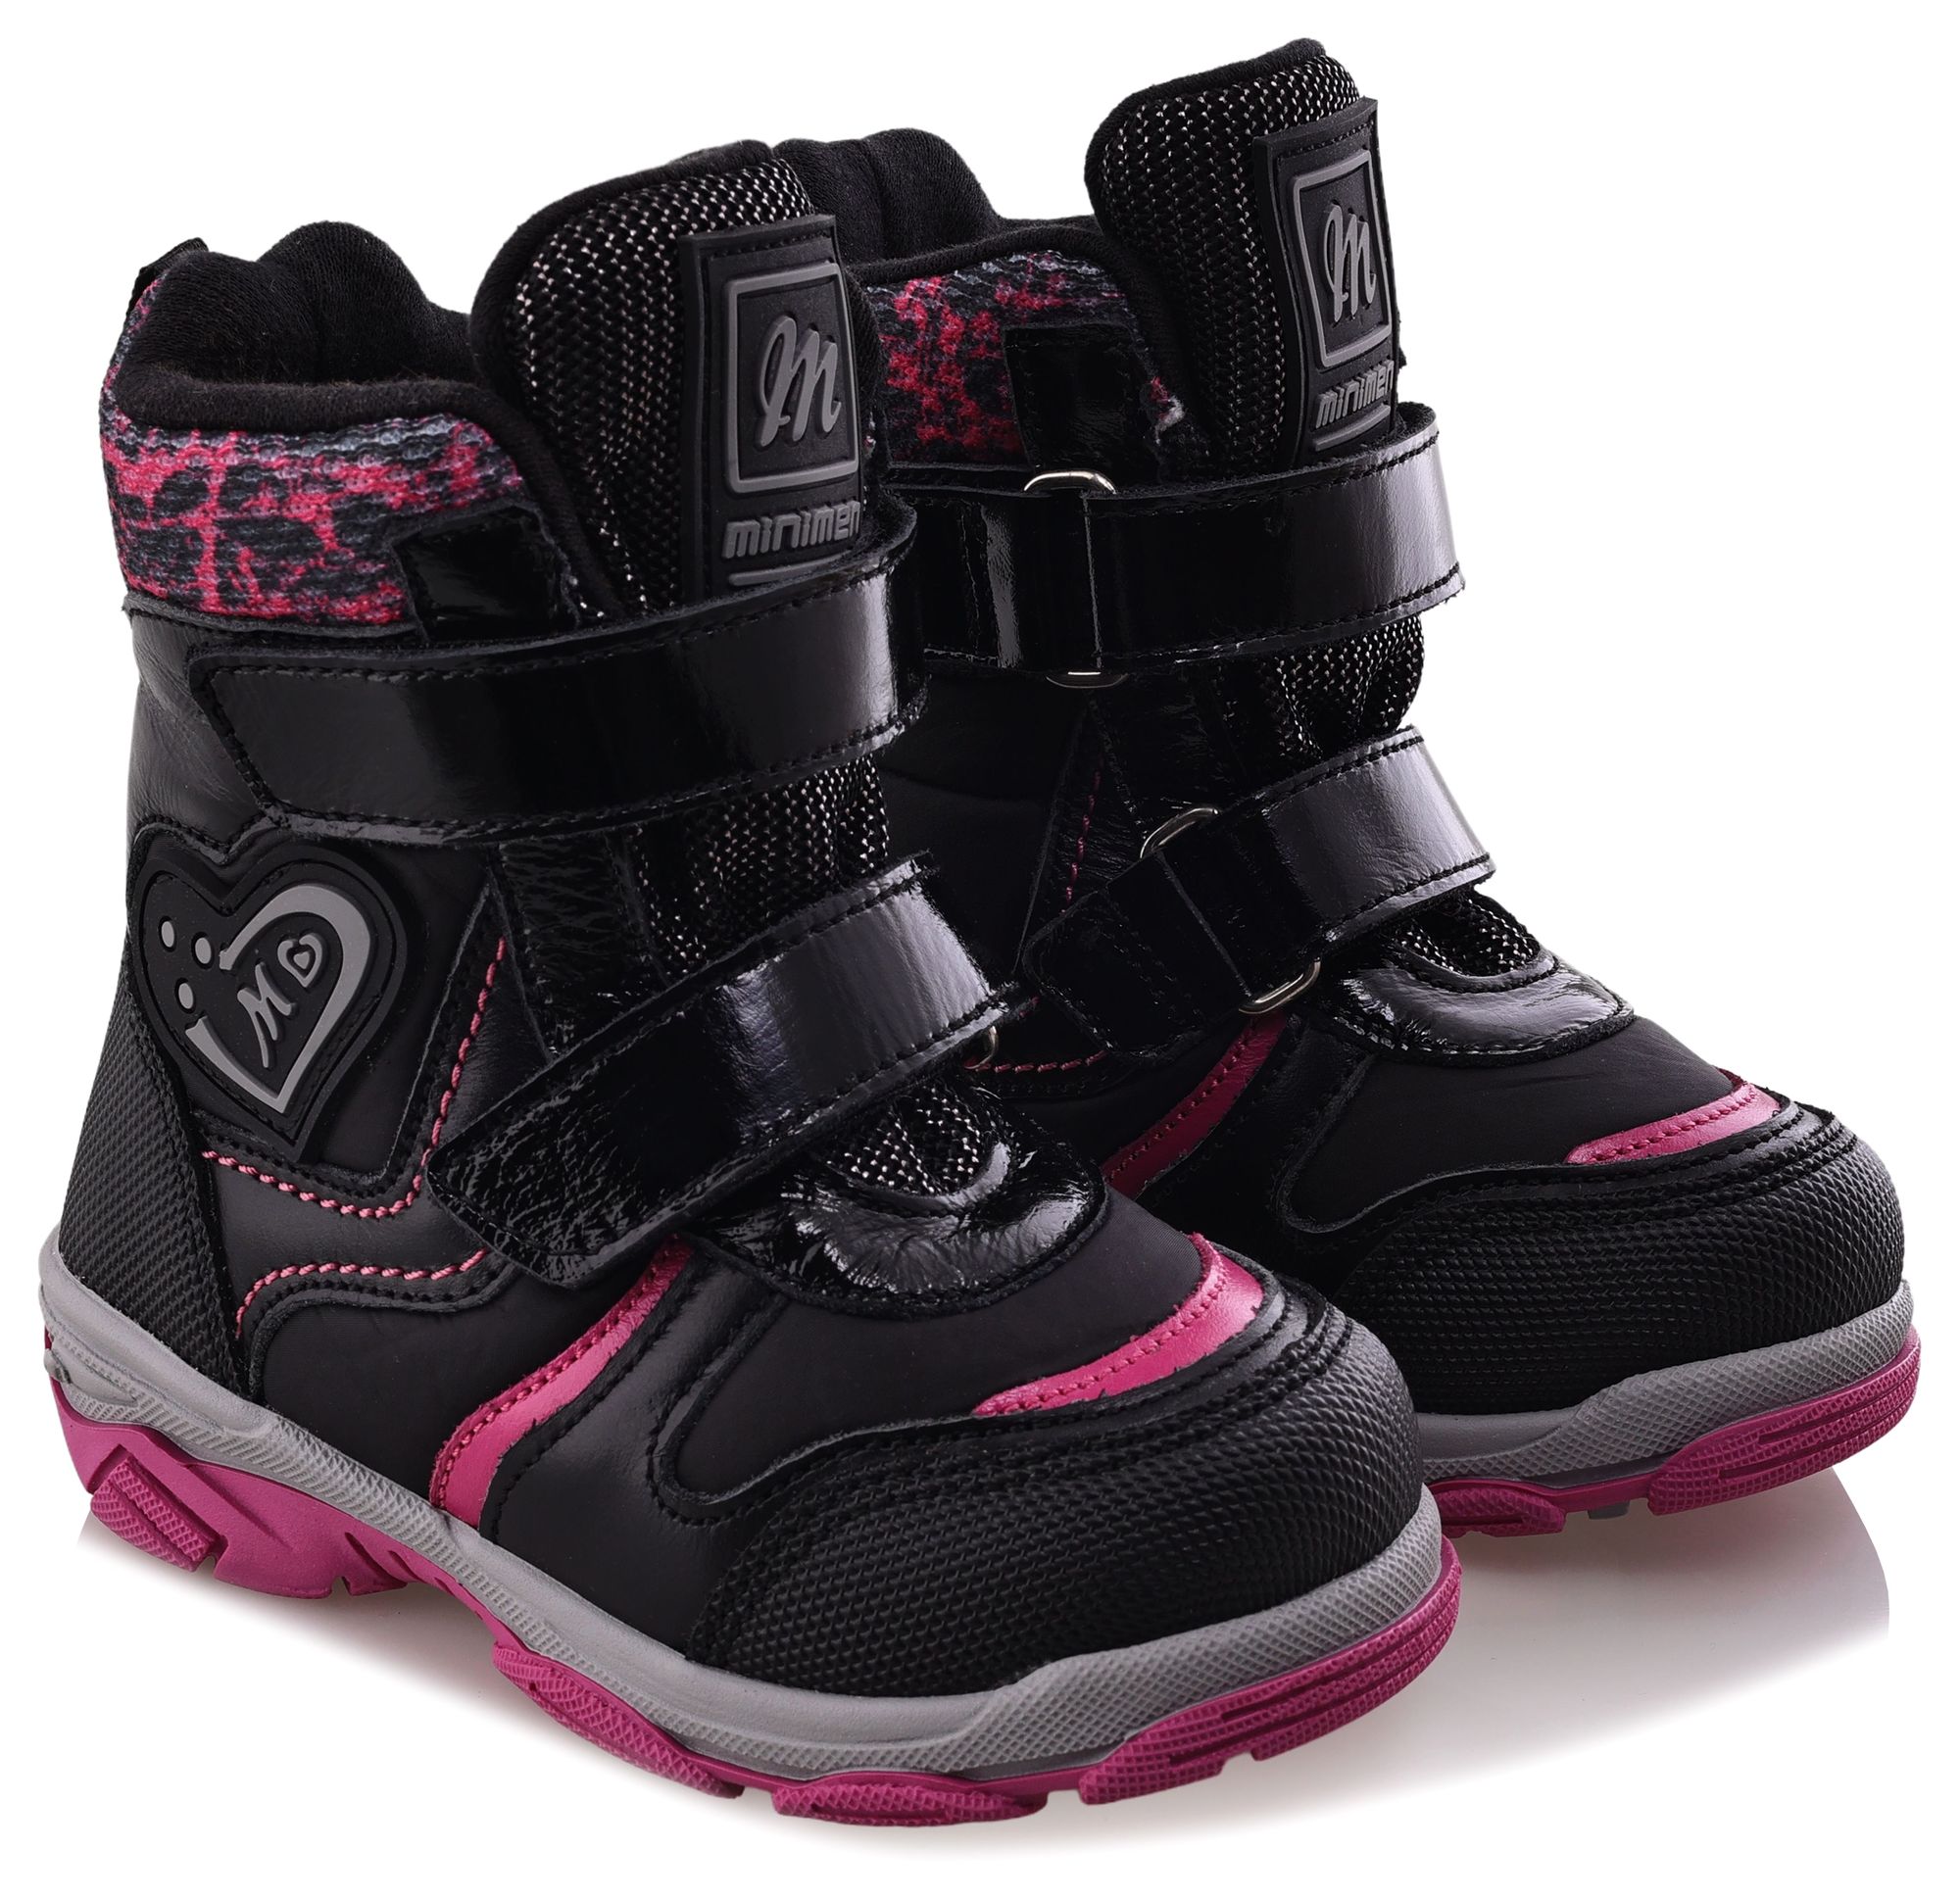 Ботинки Minimen для девочек, чёрные, размер 26, 2656-53-23B-01 ботинки minimen для девочек розовые размер 27 2656 53 23b 02